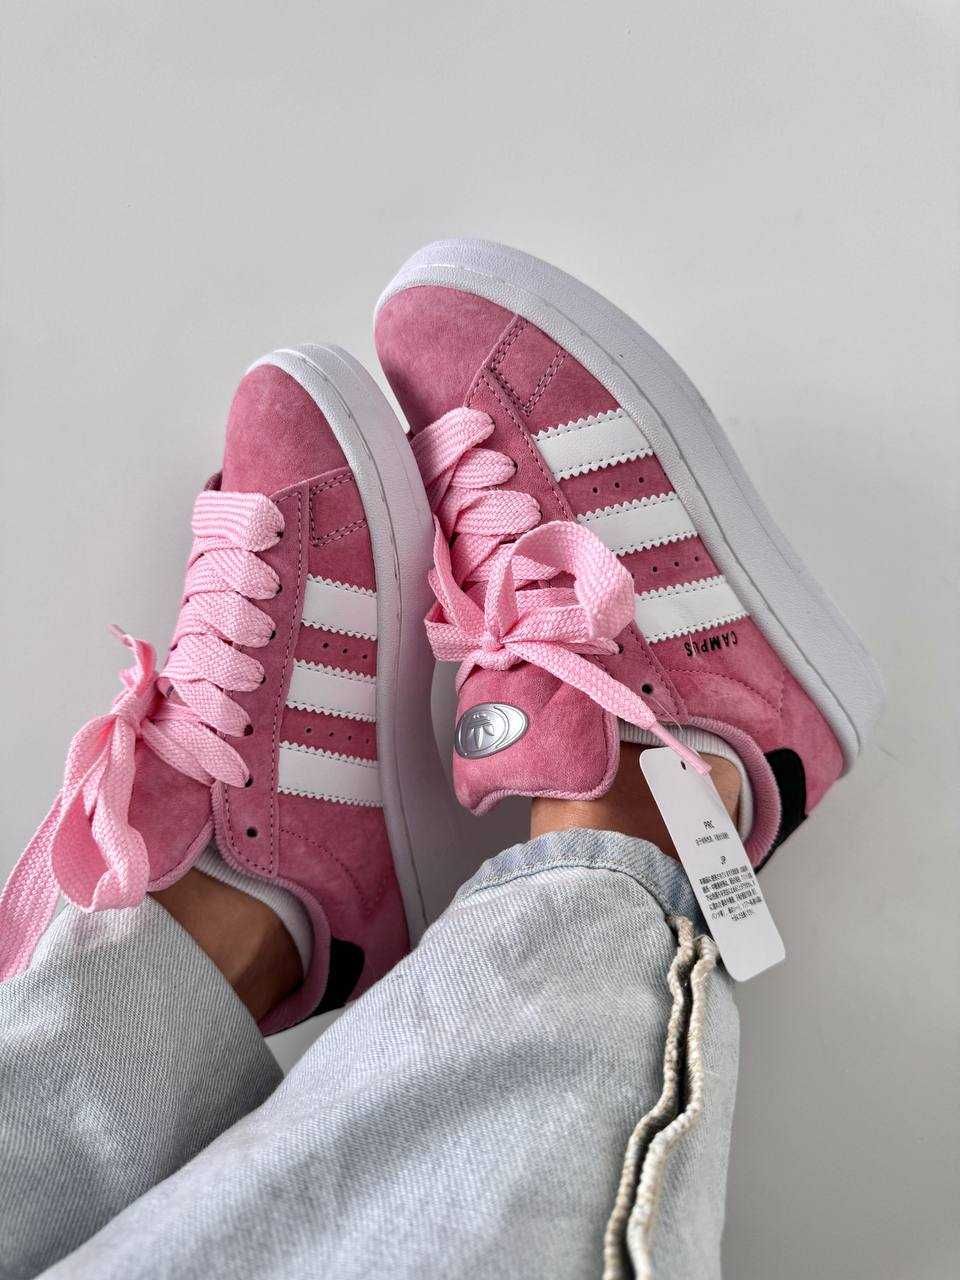 Adidas campus « light pink » premium